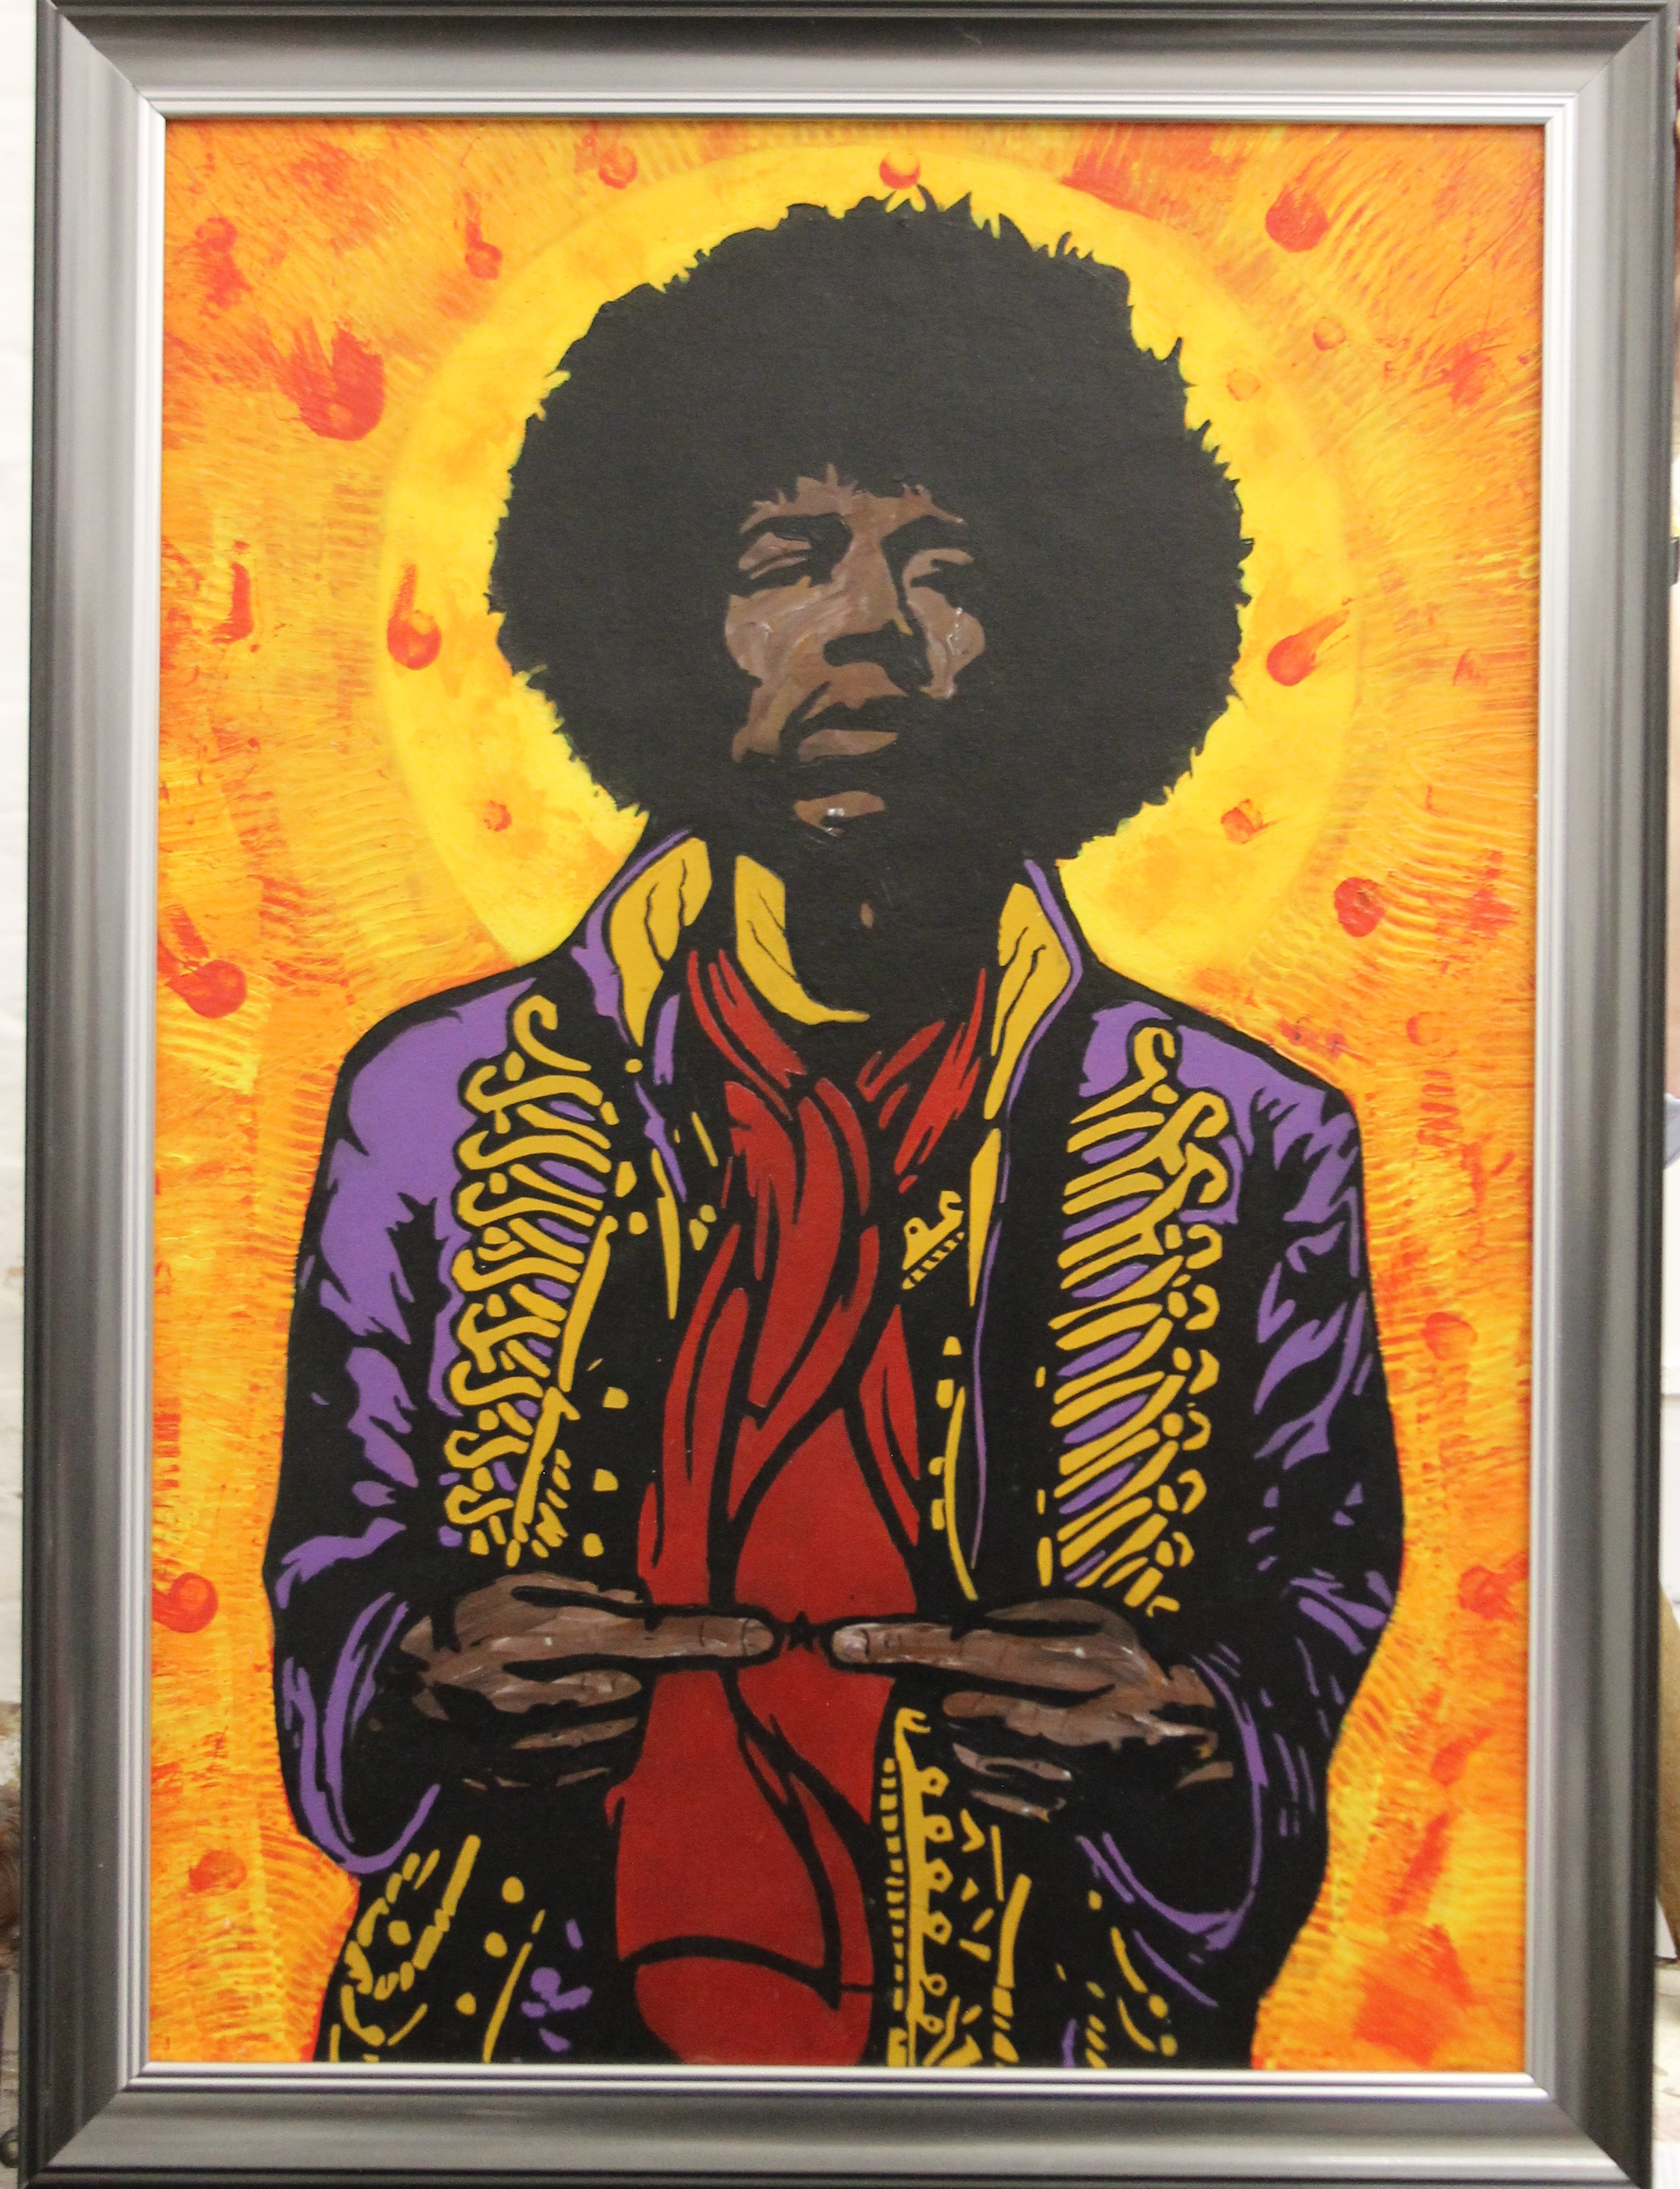 Jimi Hendrix, oil on panel, framed. 49 x 68.5 cm. - Image 2 of 2